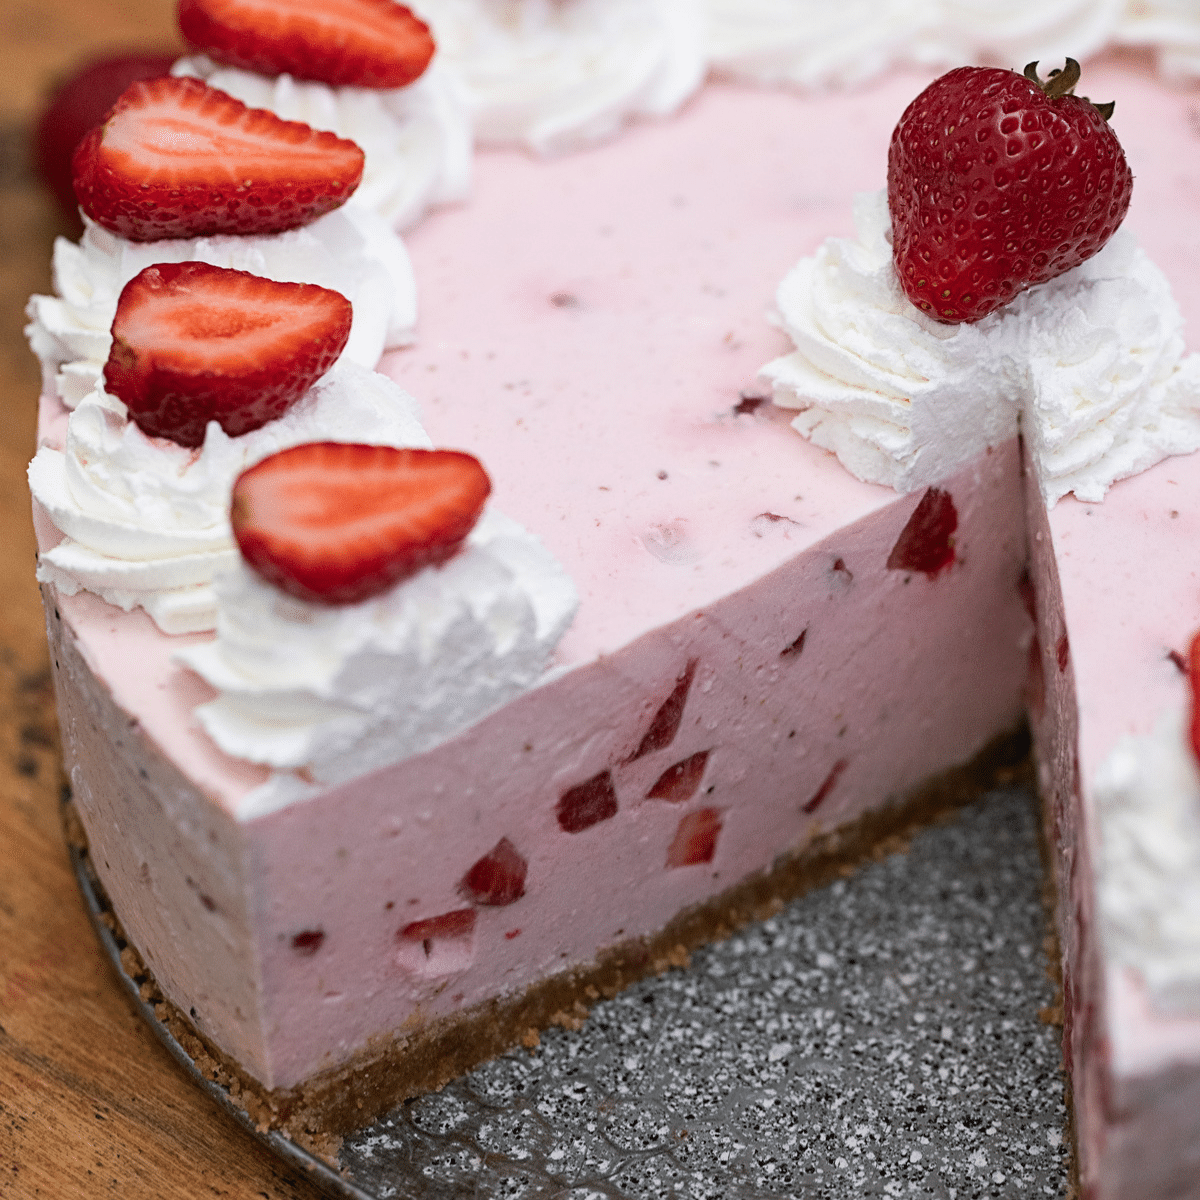 https://cdn.scrambledchefs.com/wp-content/uploads/2021/02/No-Bake-Strawberry-Cheesecake-F.png